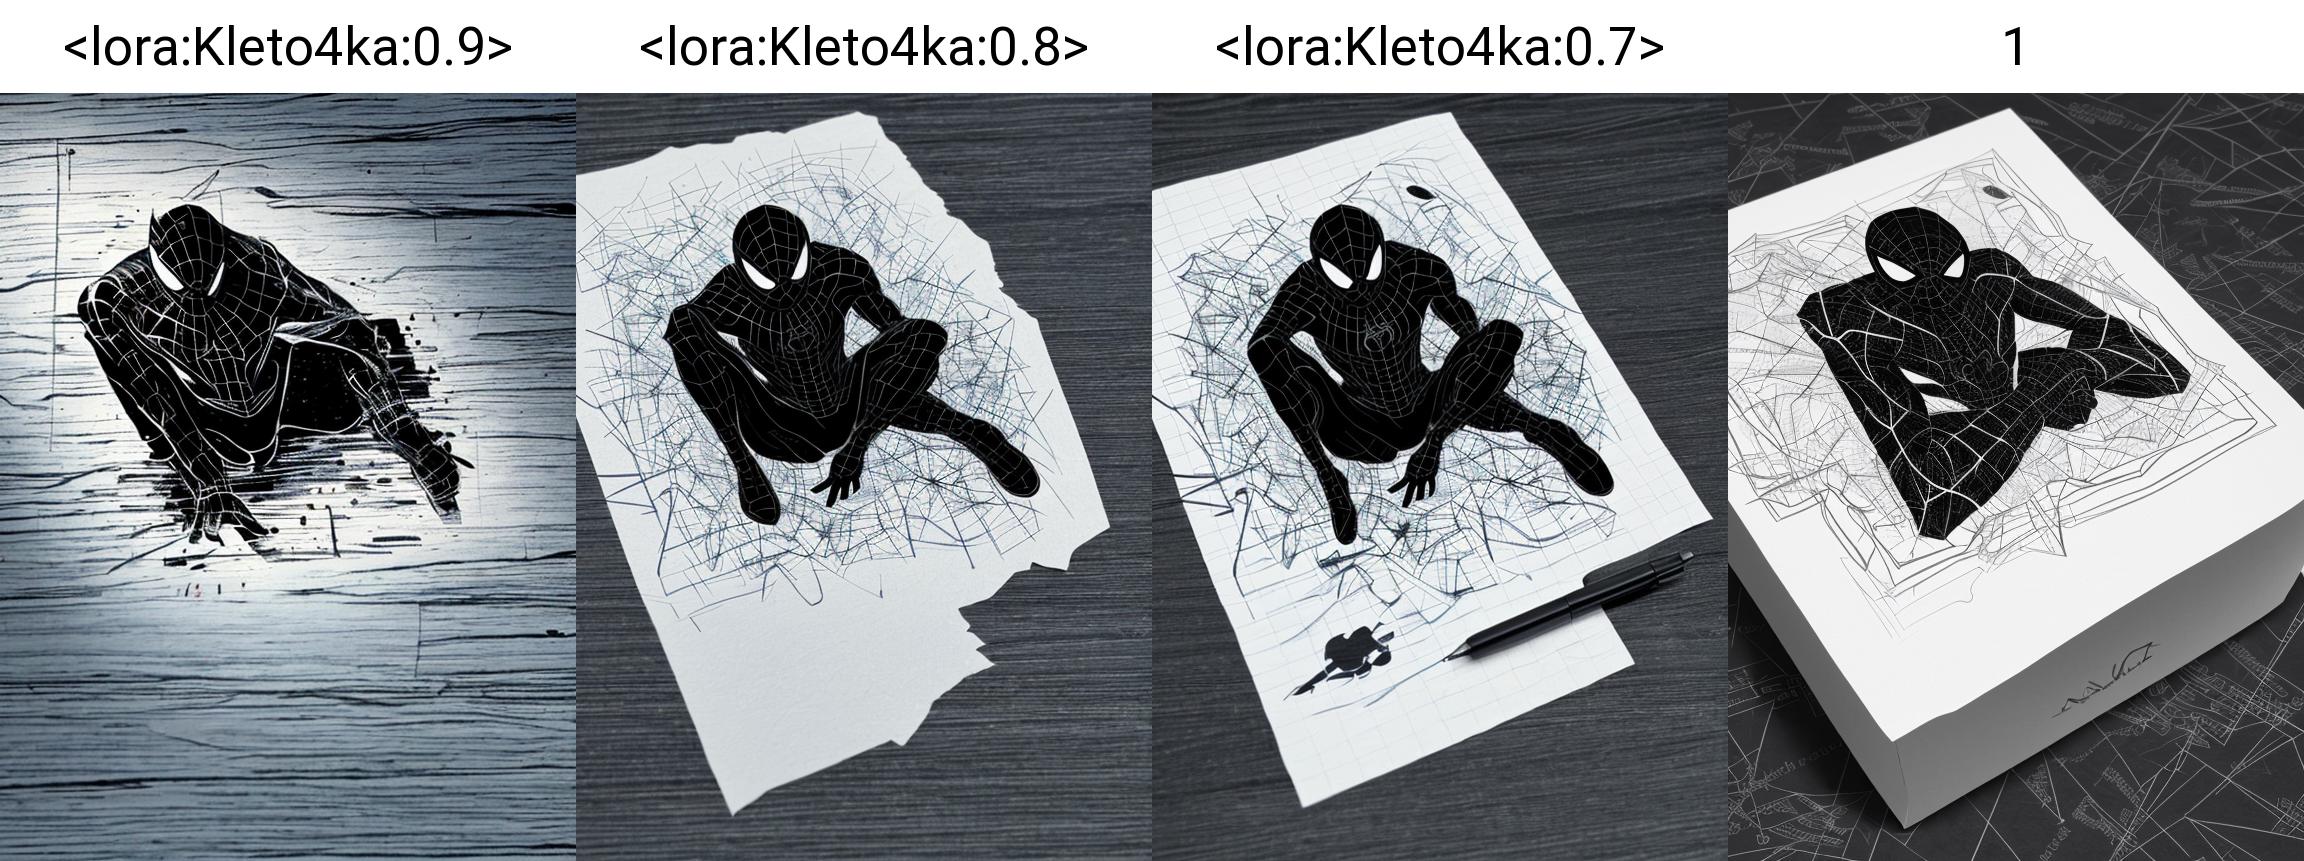 Kleto4ka / art checkered notebook image by Kotoshko